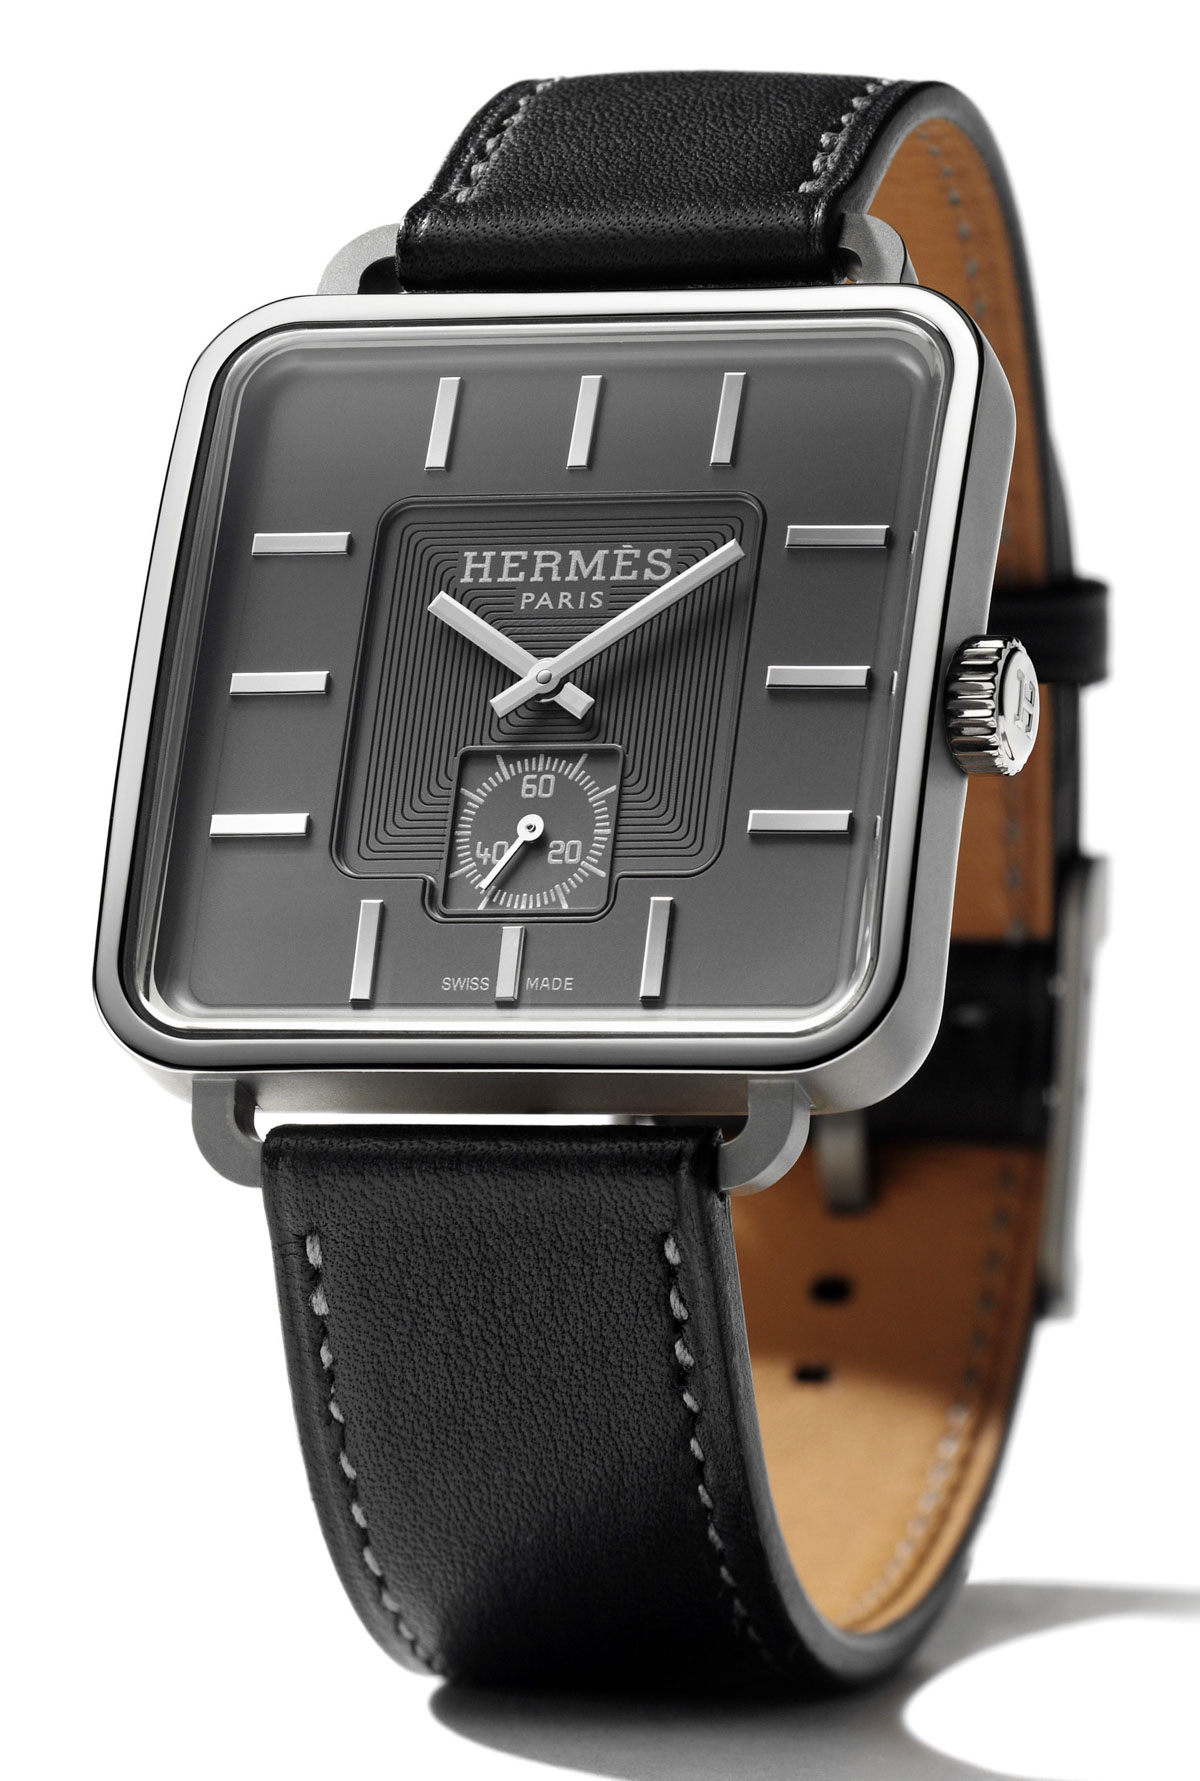 hermes watch cost